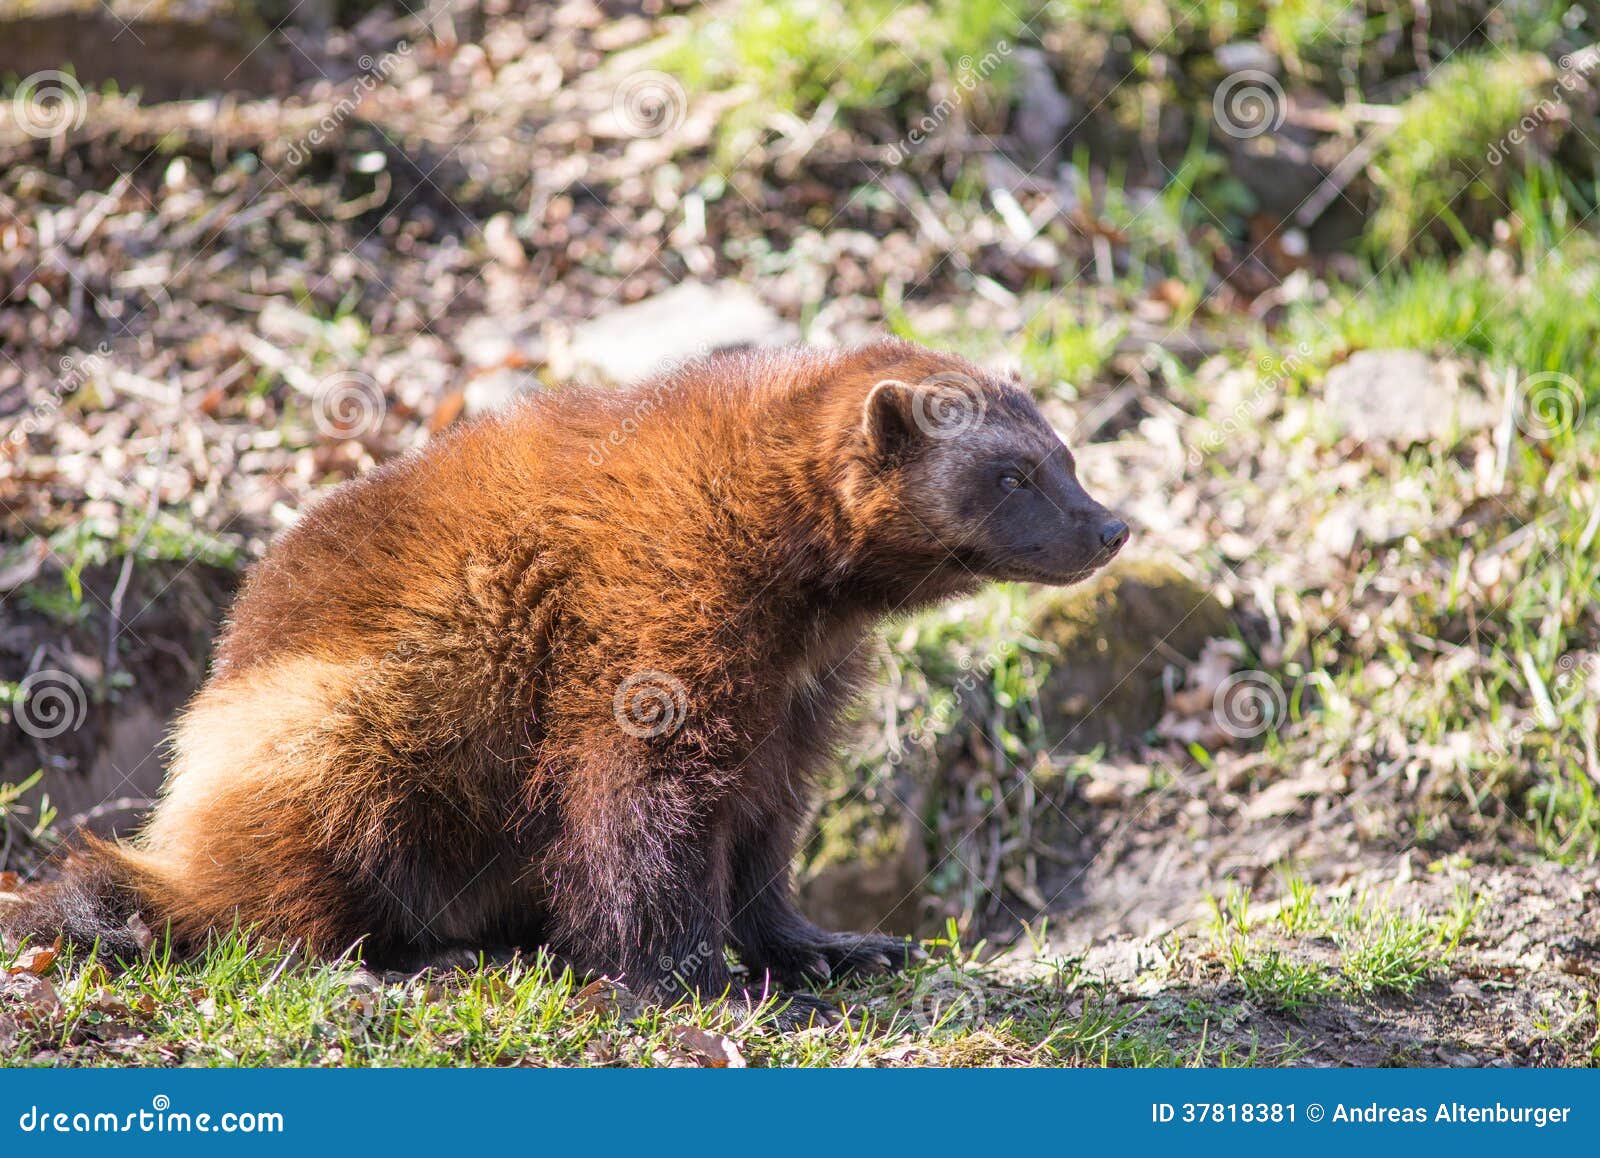 超过 30 张关于“狼獾”和“动物”的免费图片 - Pixabay